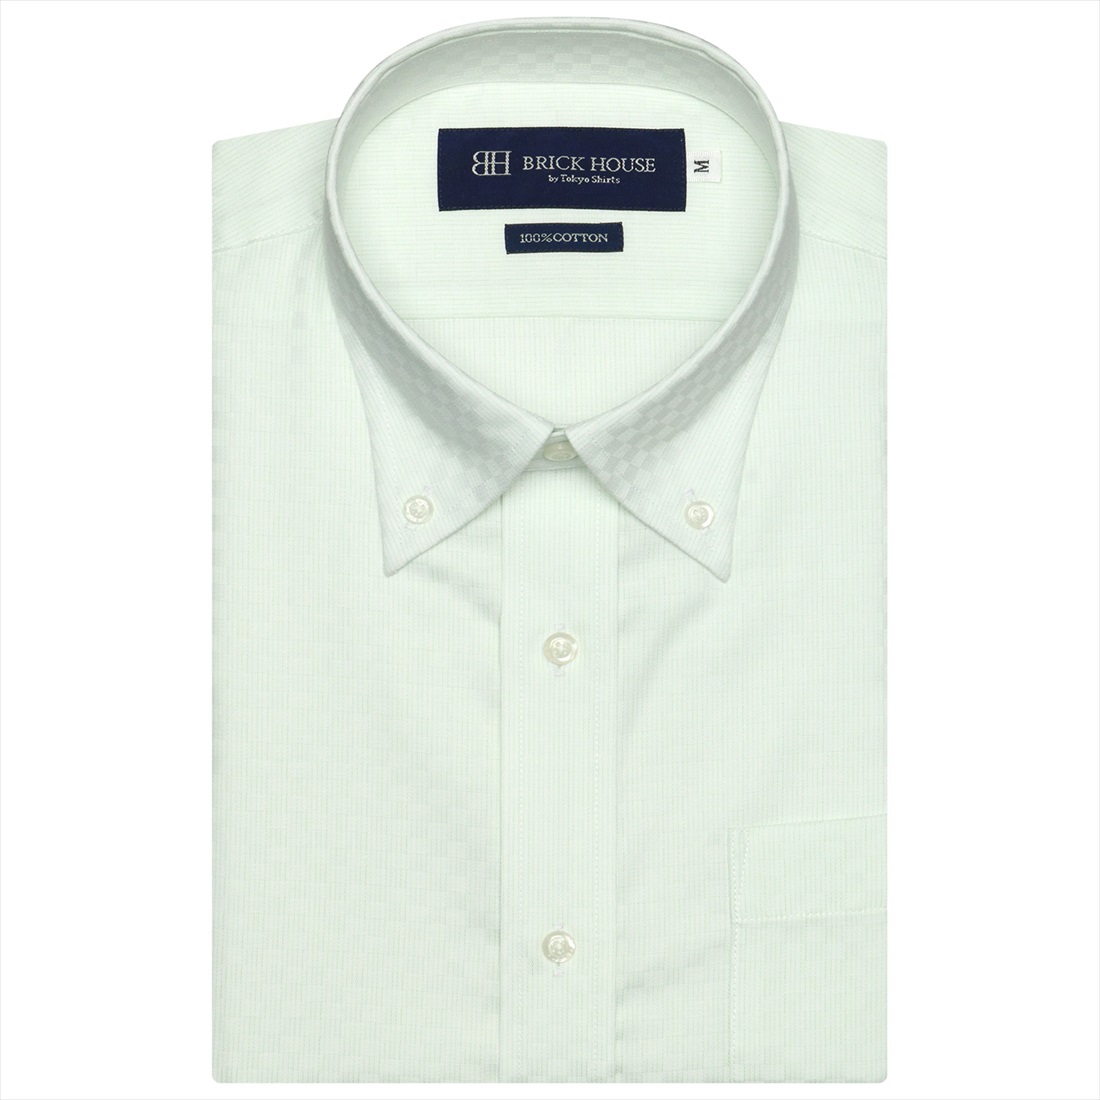 【ブラック】(M)形態安定 ボタンダウンカラー 綿100% 半袖ワイシャツ